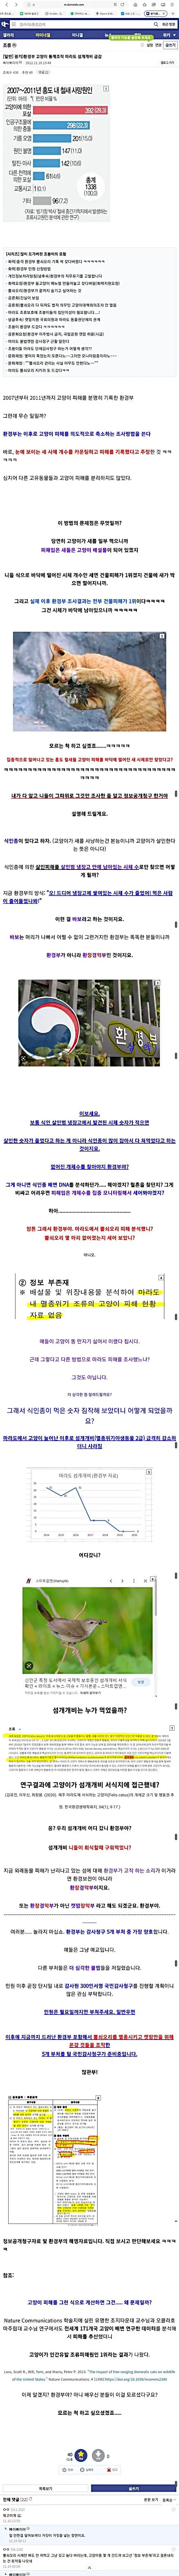 캣맘들 때문에 광기에 휩싸인 조류갤 | mbong.kr 엠봉